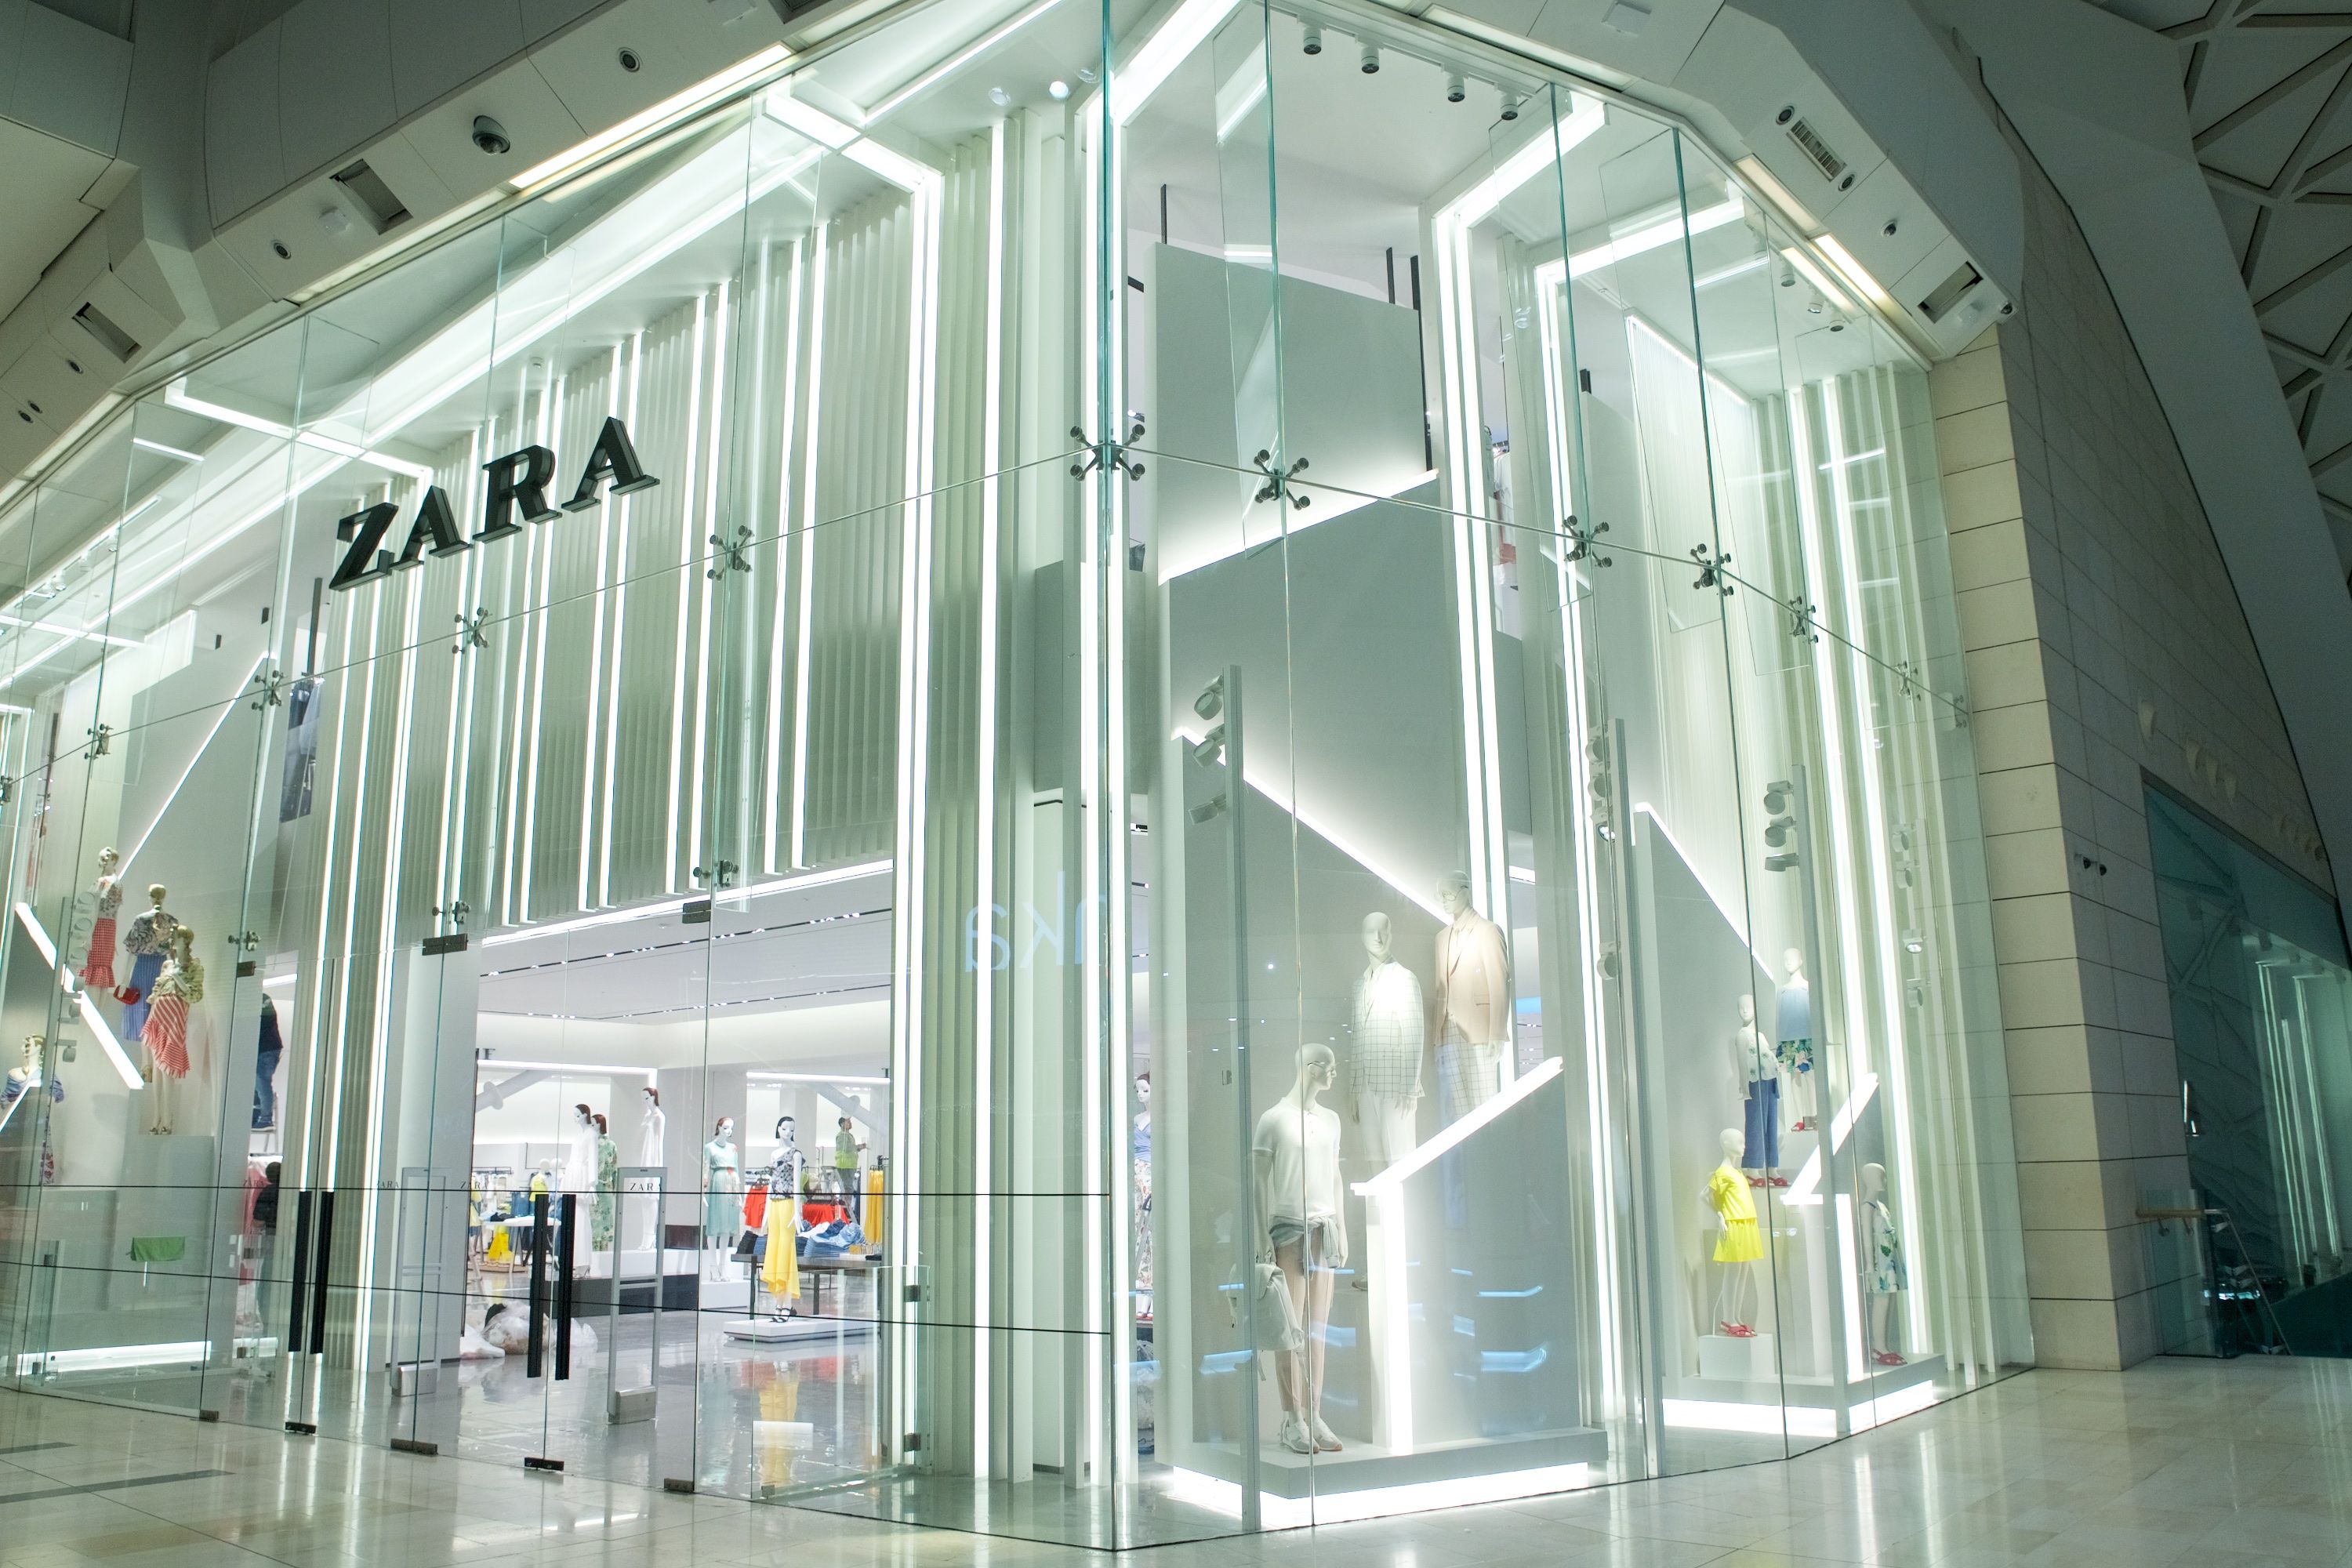 The UK's biggest Zara